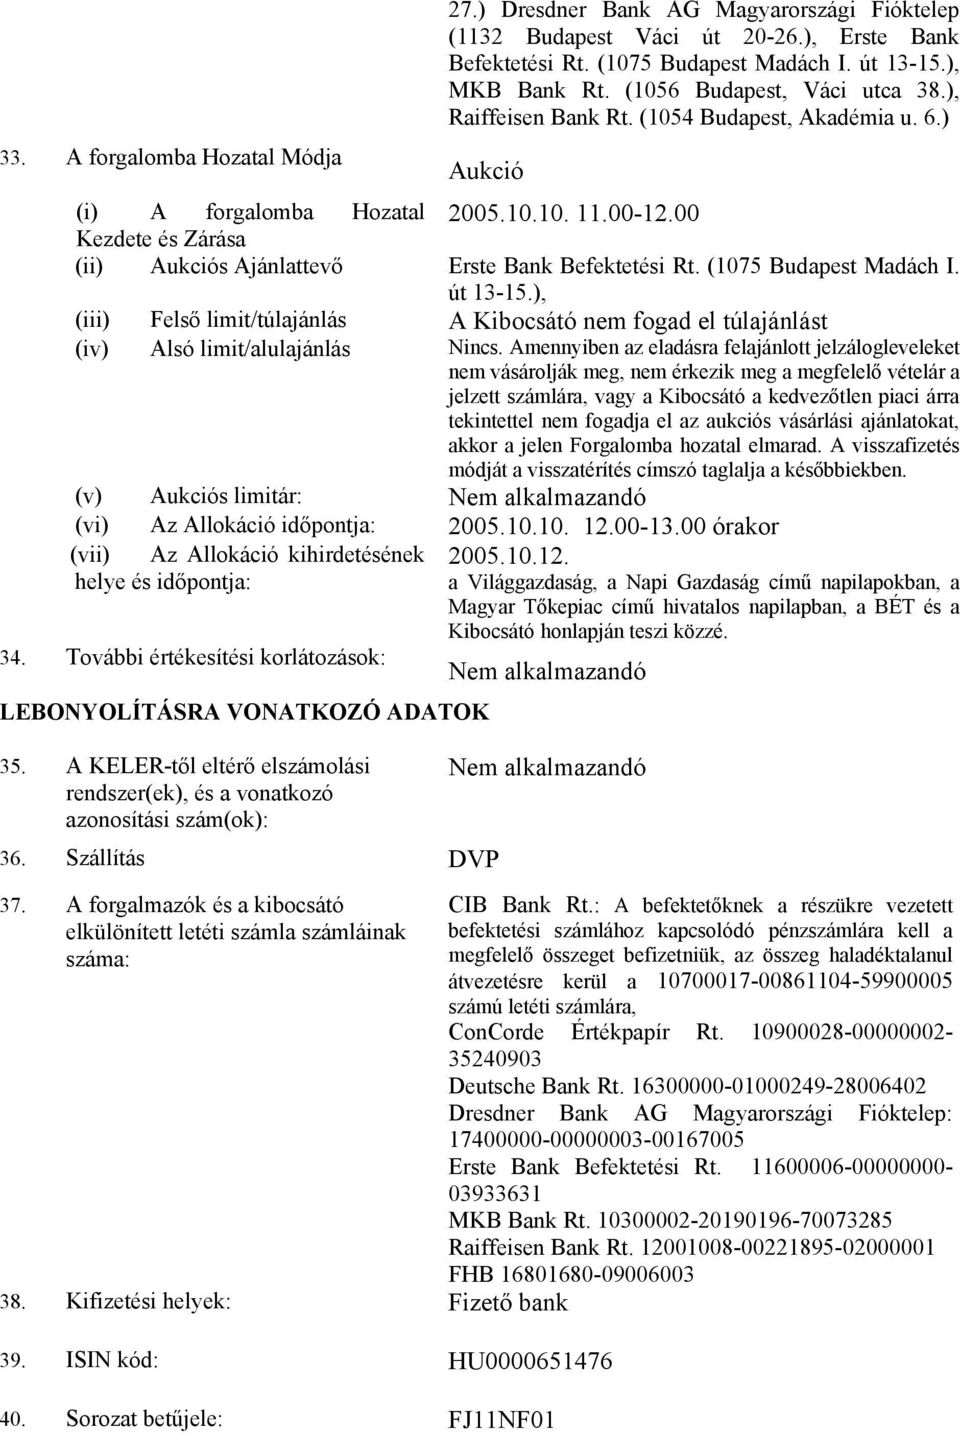 00 Kezdete és Zárása (ii) Aukciós Ajánlattevő Erste Bank Befektetési Rt. (1075 Budapest Madách I. út 13-15.